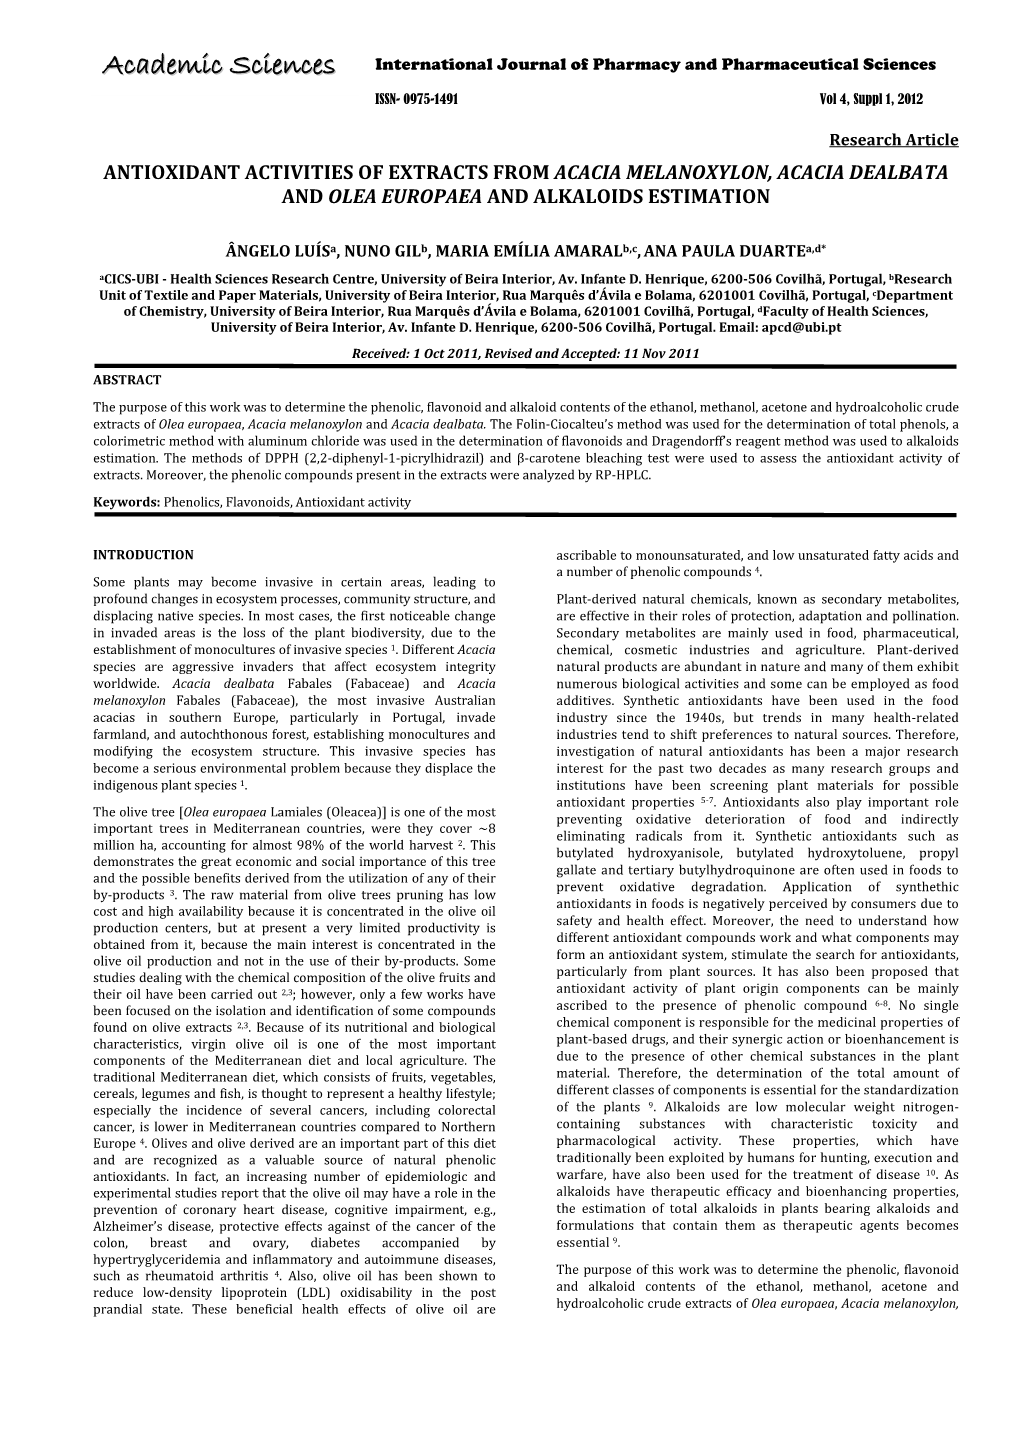 Acacia Melanoxylon, Acacia Dealbata and Olea Europaea and Alkaloids Estimation